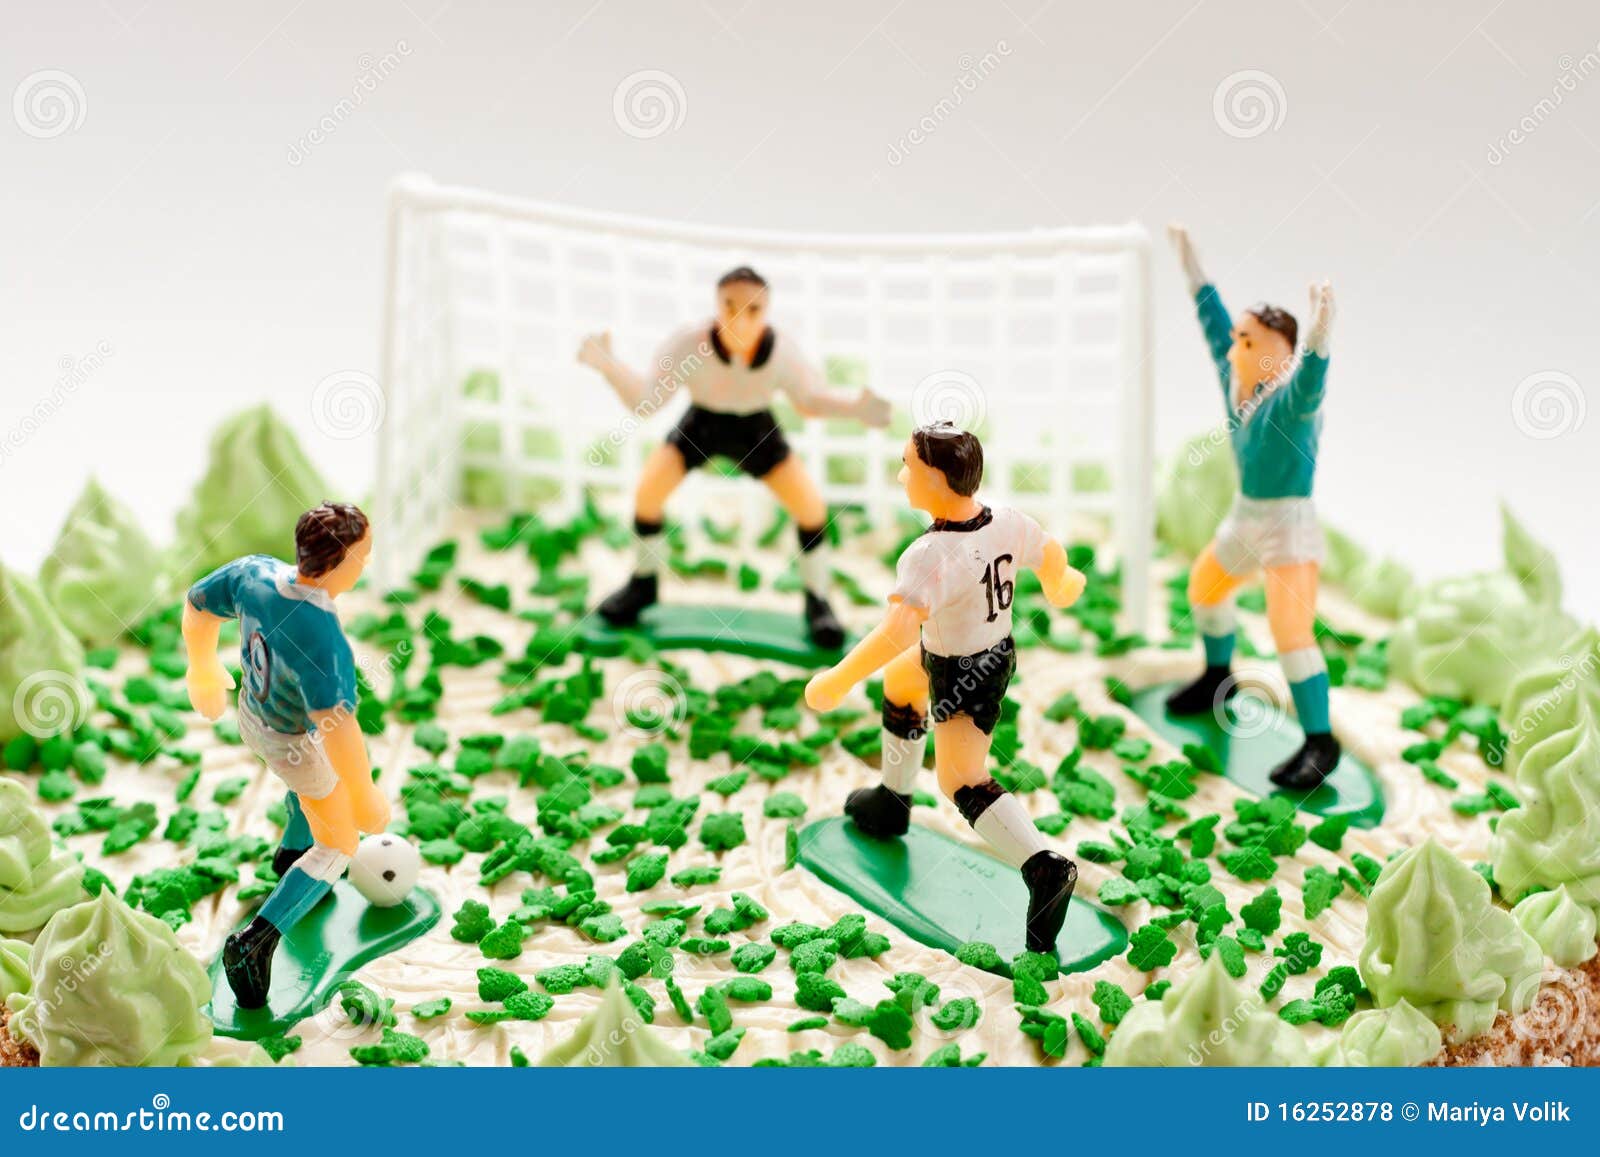 版权 世界杯足球主题生日蛋糕插牌 足球运动生日派对烘焙装饰插件-阿里巴巴